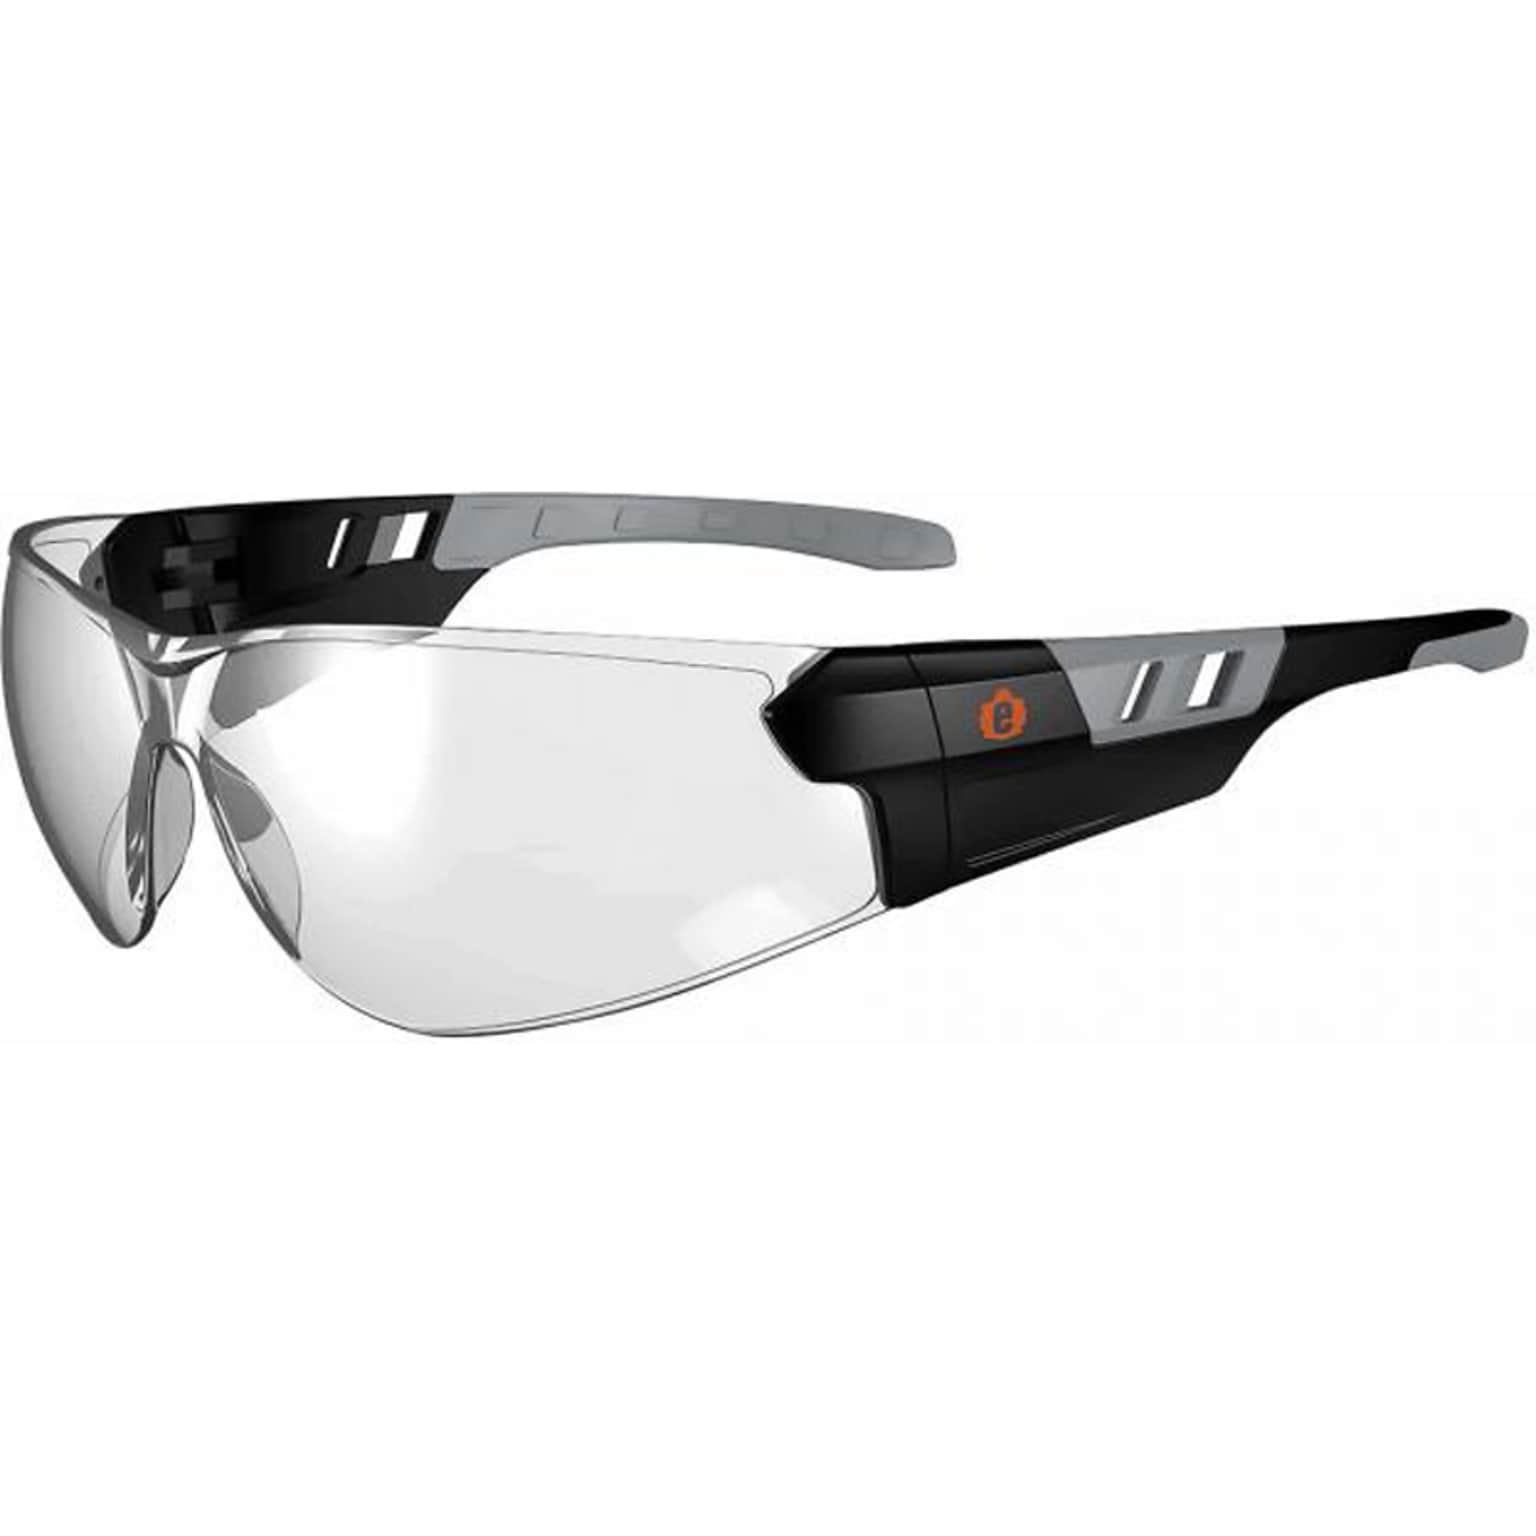 Ergodyne Skullerz SAGA Safety Glasses, Frameless, Indoor/Outdoor Lens (59180)